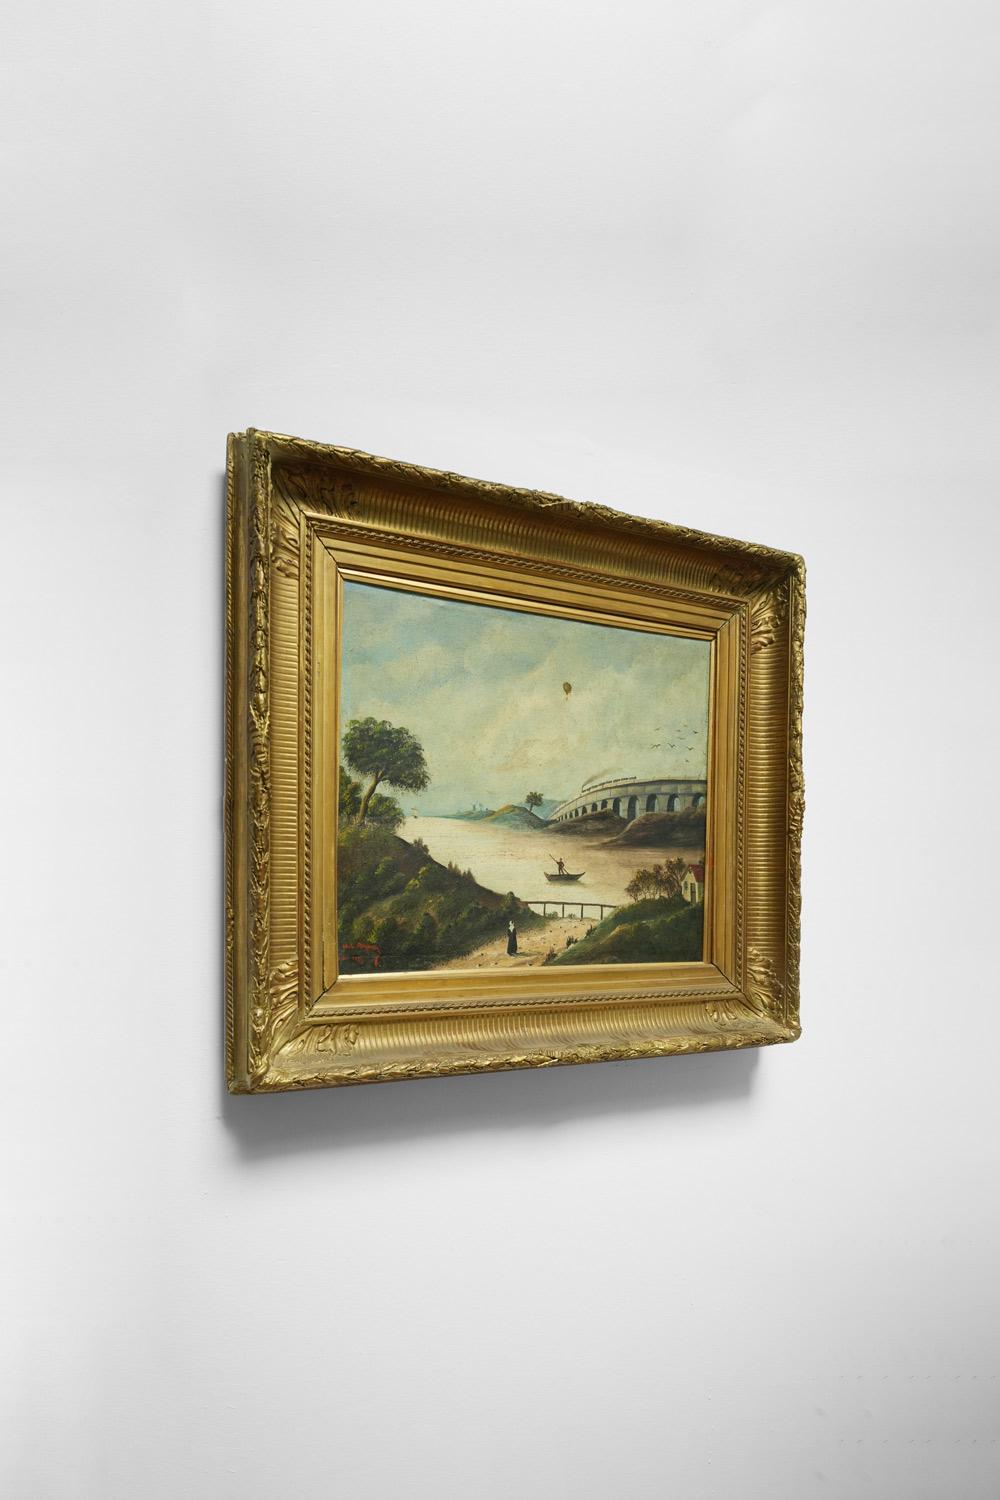 Peinture à l'huile sur toile, signée M.L.A. Daguerry, située à Paris et datée de 1888 dans l'angle inférieur gauche. Cadre en bois et stuc doré. France, 1888. 